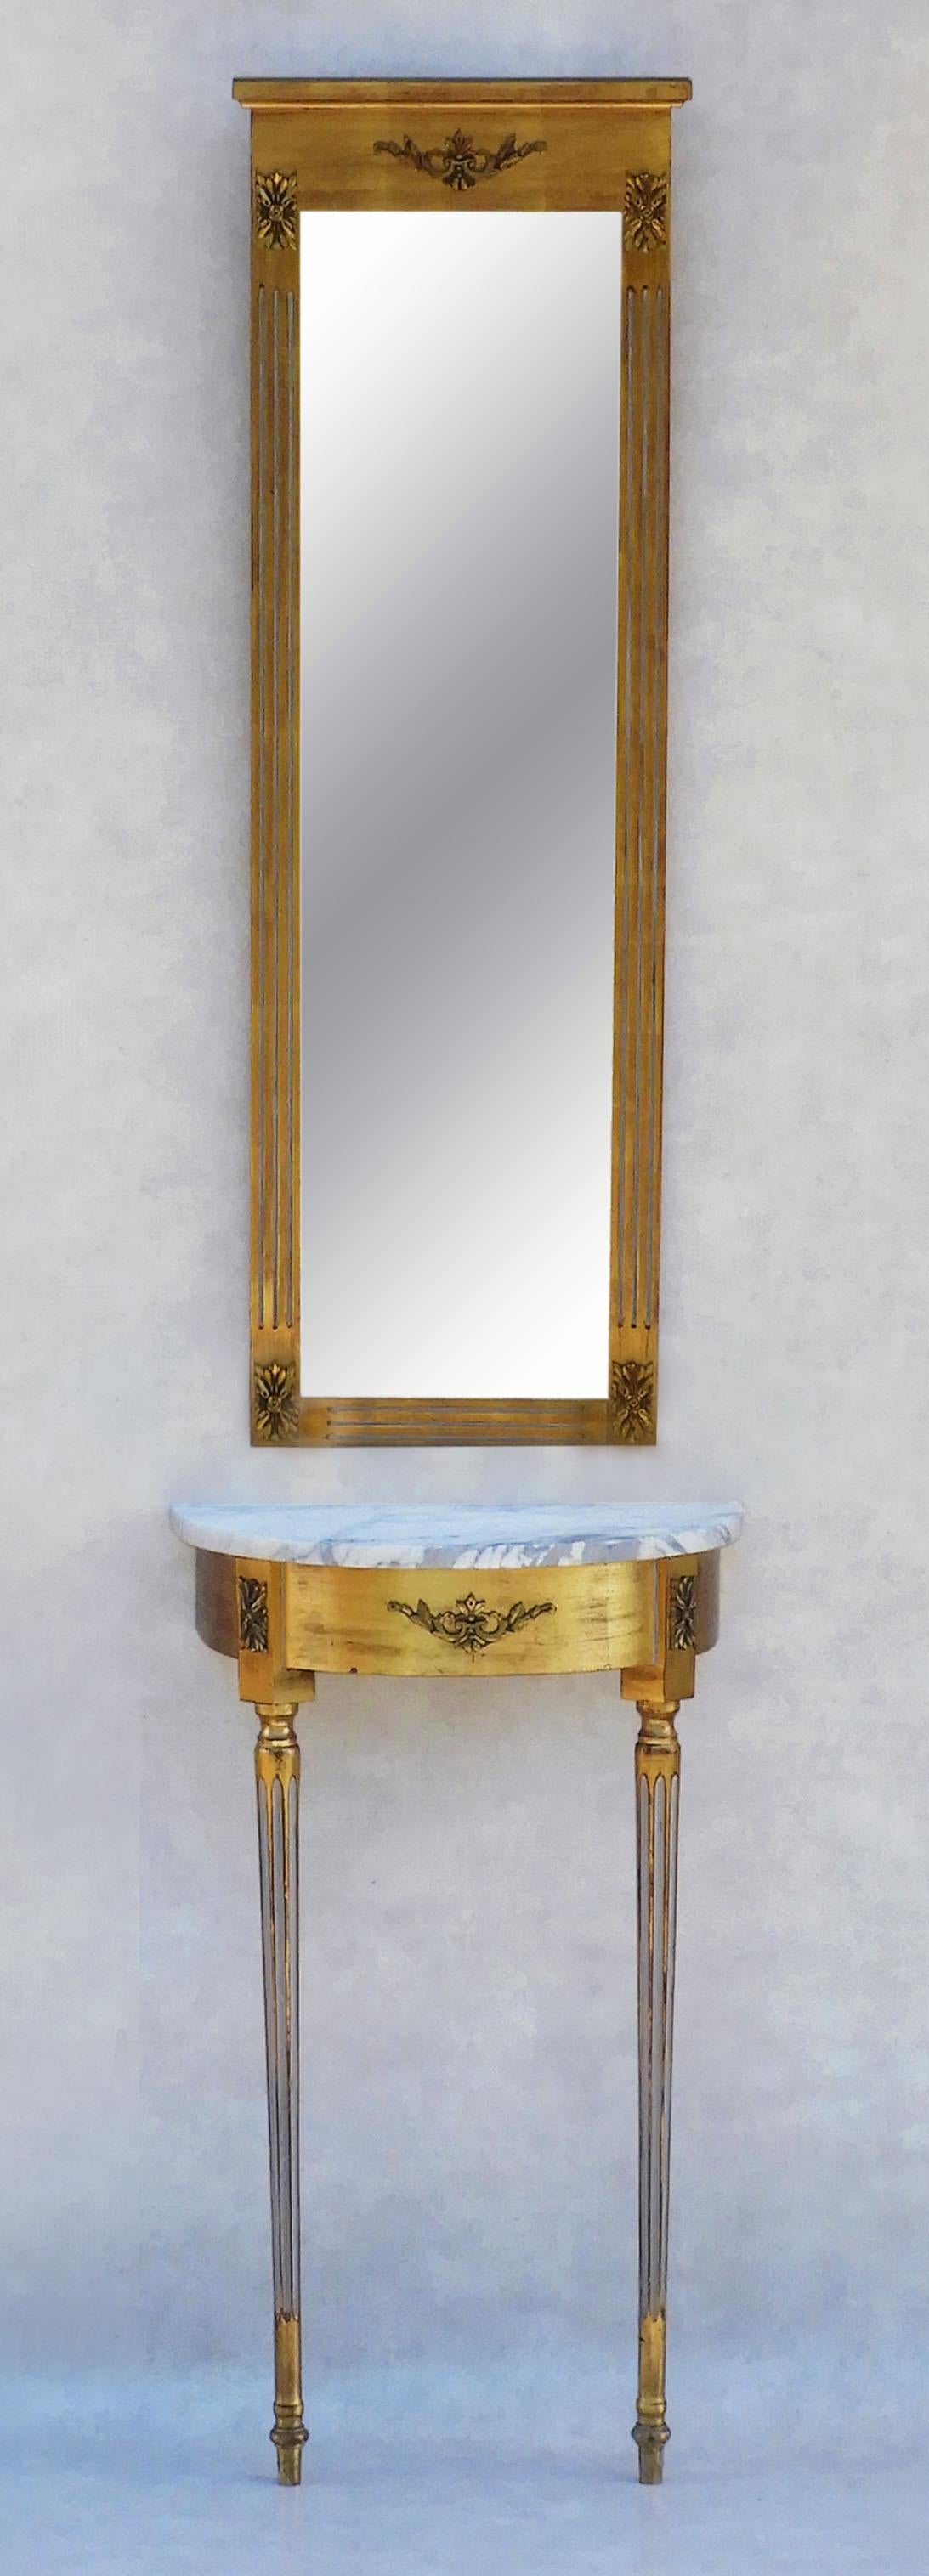 Magnifique table console en marbre et bois doré de style Louis XVI et miroir biseauté, années 1950, France. 
Belle table en bois doré, gesso et murale, surmontée d'un marbre blanc veiné et d'un grand et mince miroir biseauté. 
Détails néoclassiques